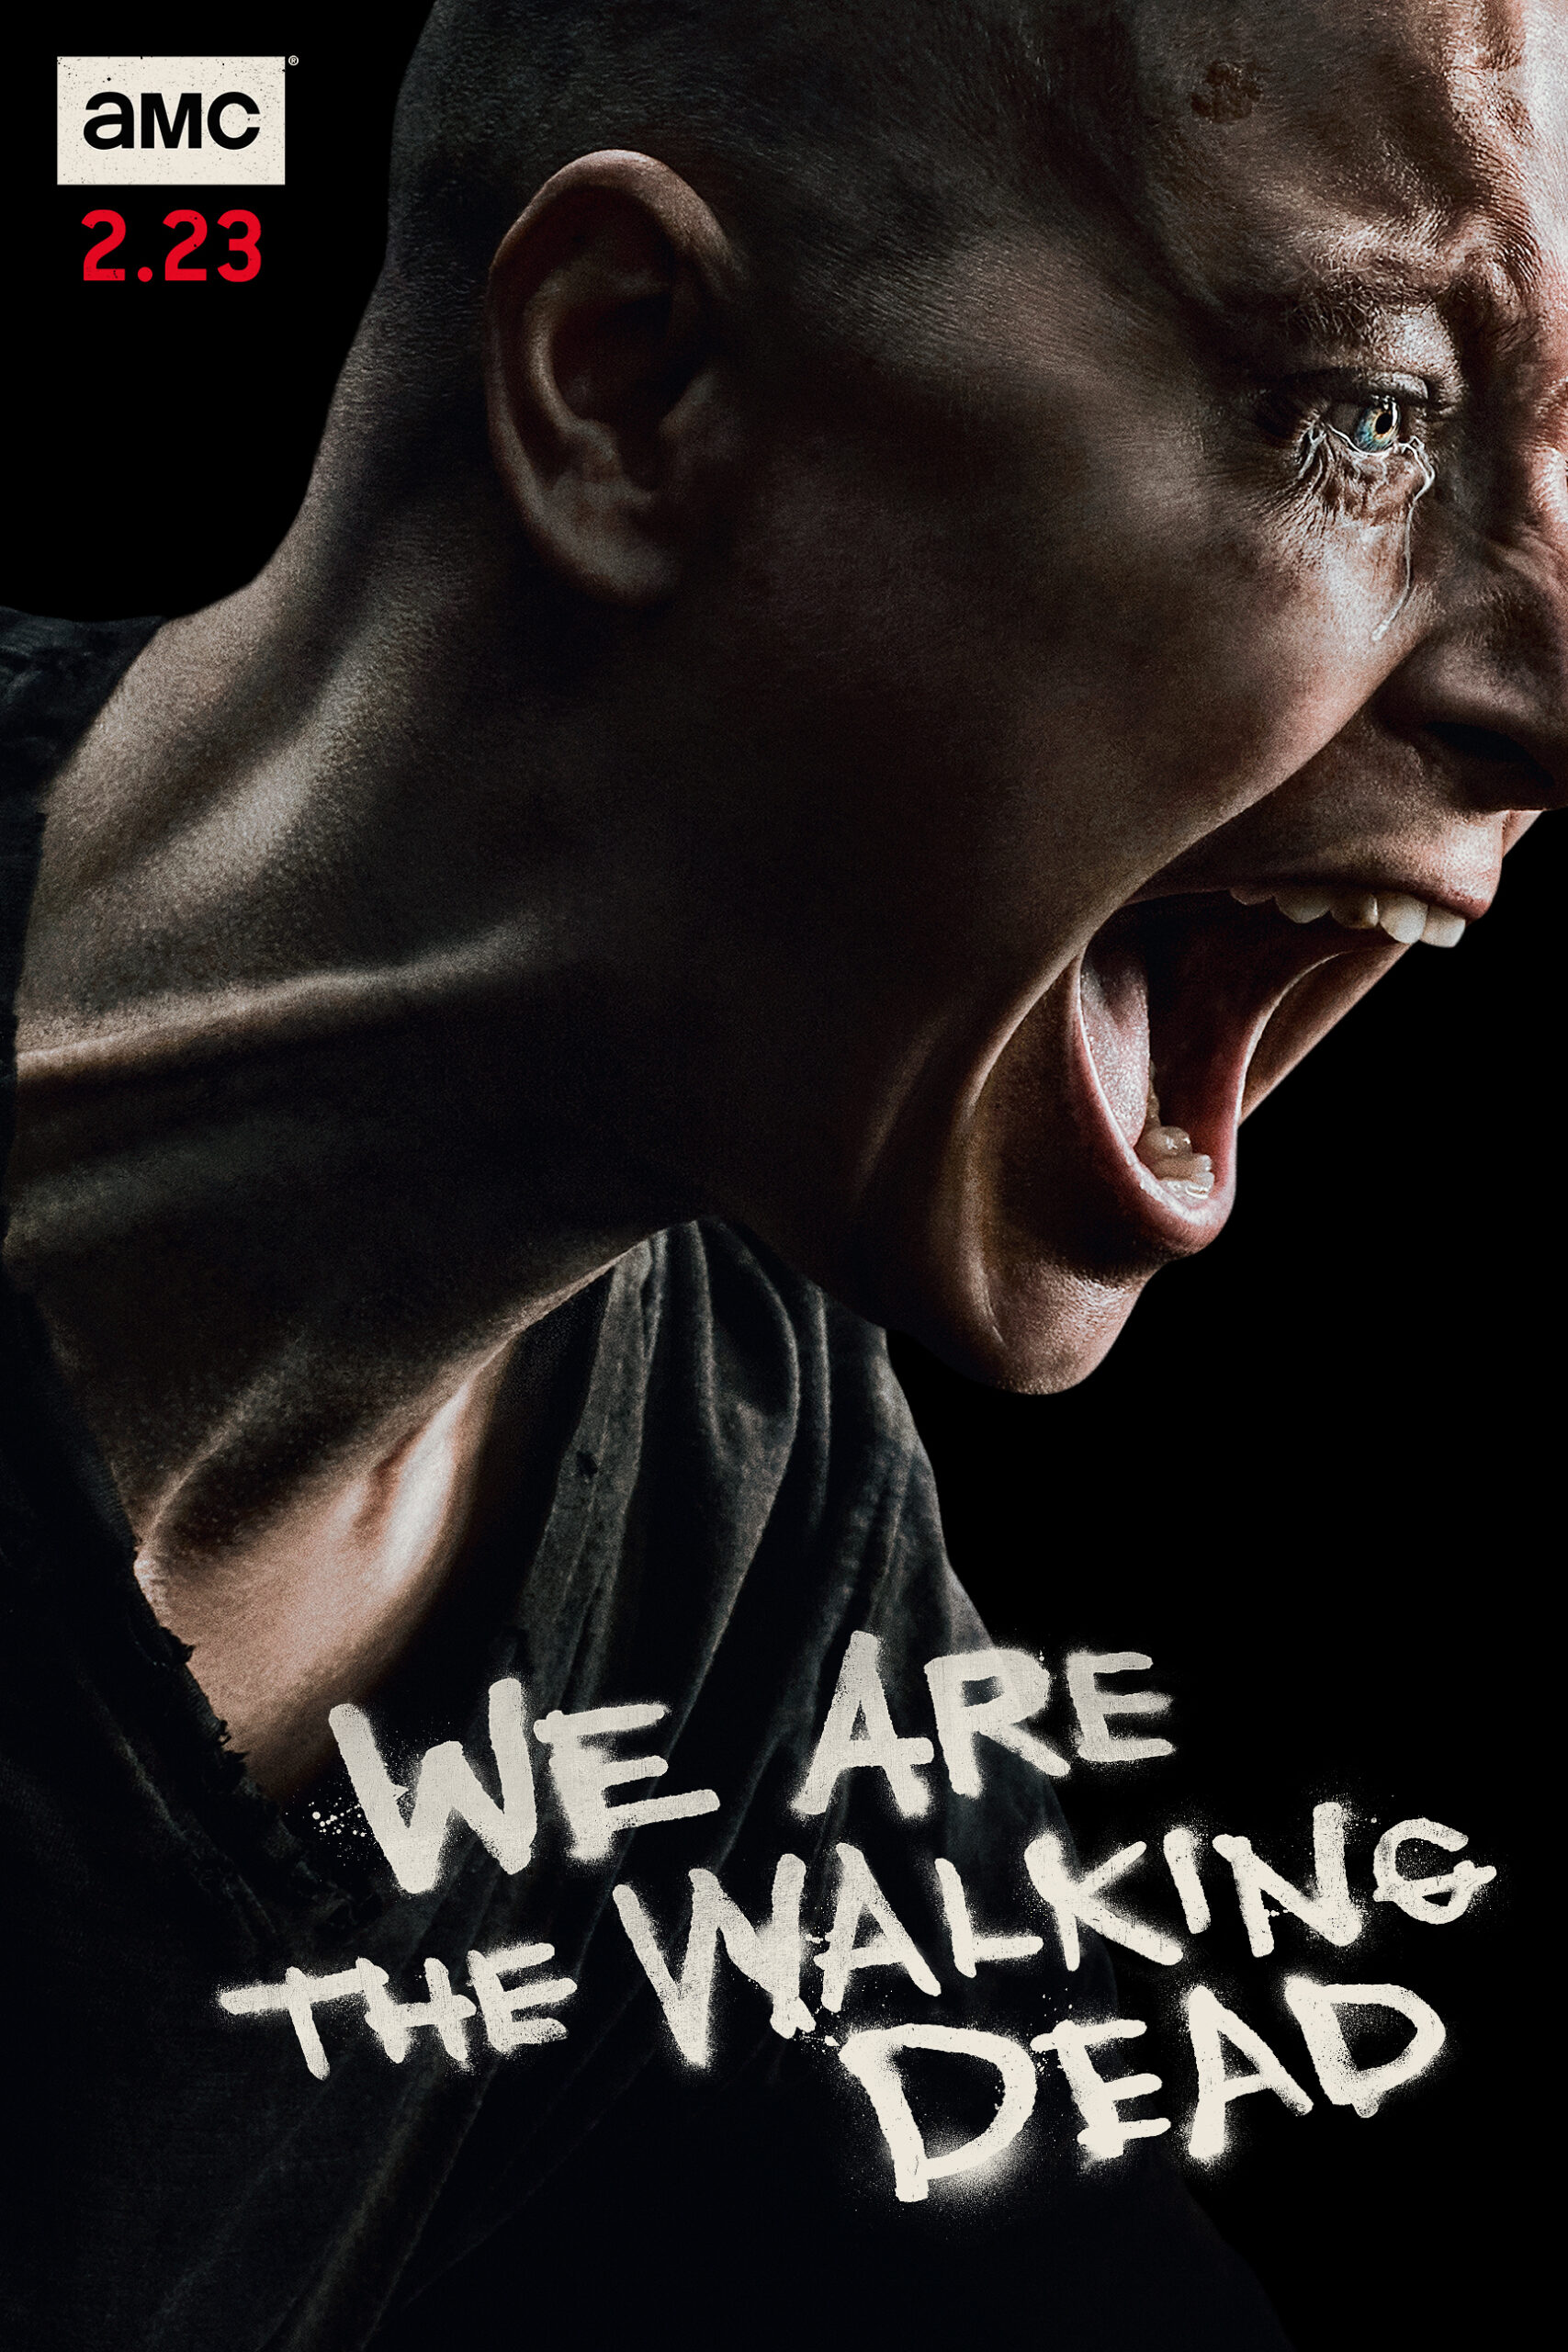 ดูหนังออนไลน์ฟรี The Walking Dead Season 4 EP3 เดอะวอล์กกิงเดด ปี4 ตอนที่3 [[Sub Thai]]